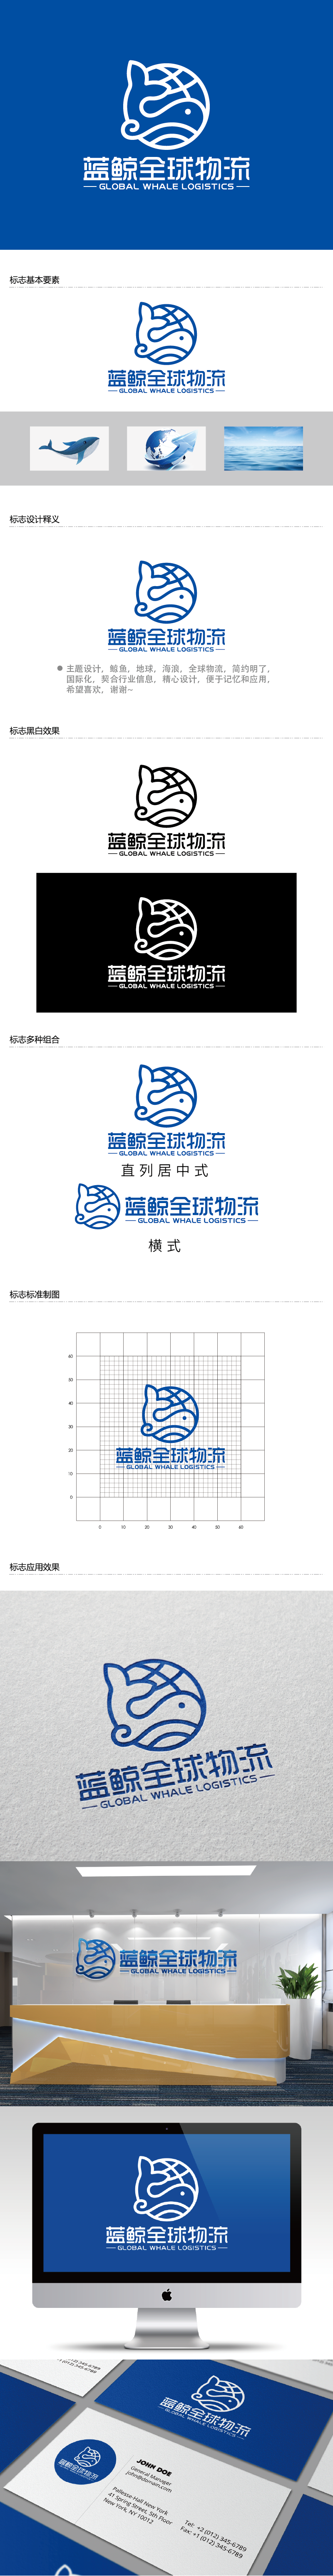 王涛的蓝鲸全球物流（广州）有限公司logo设计